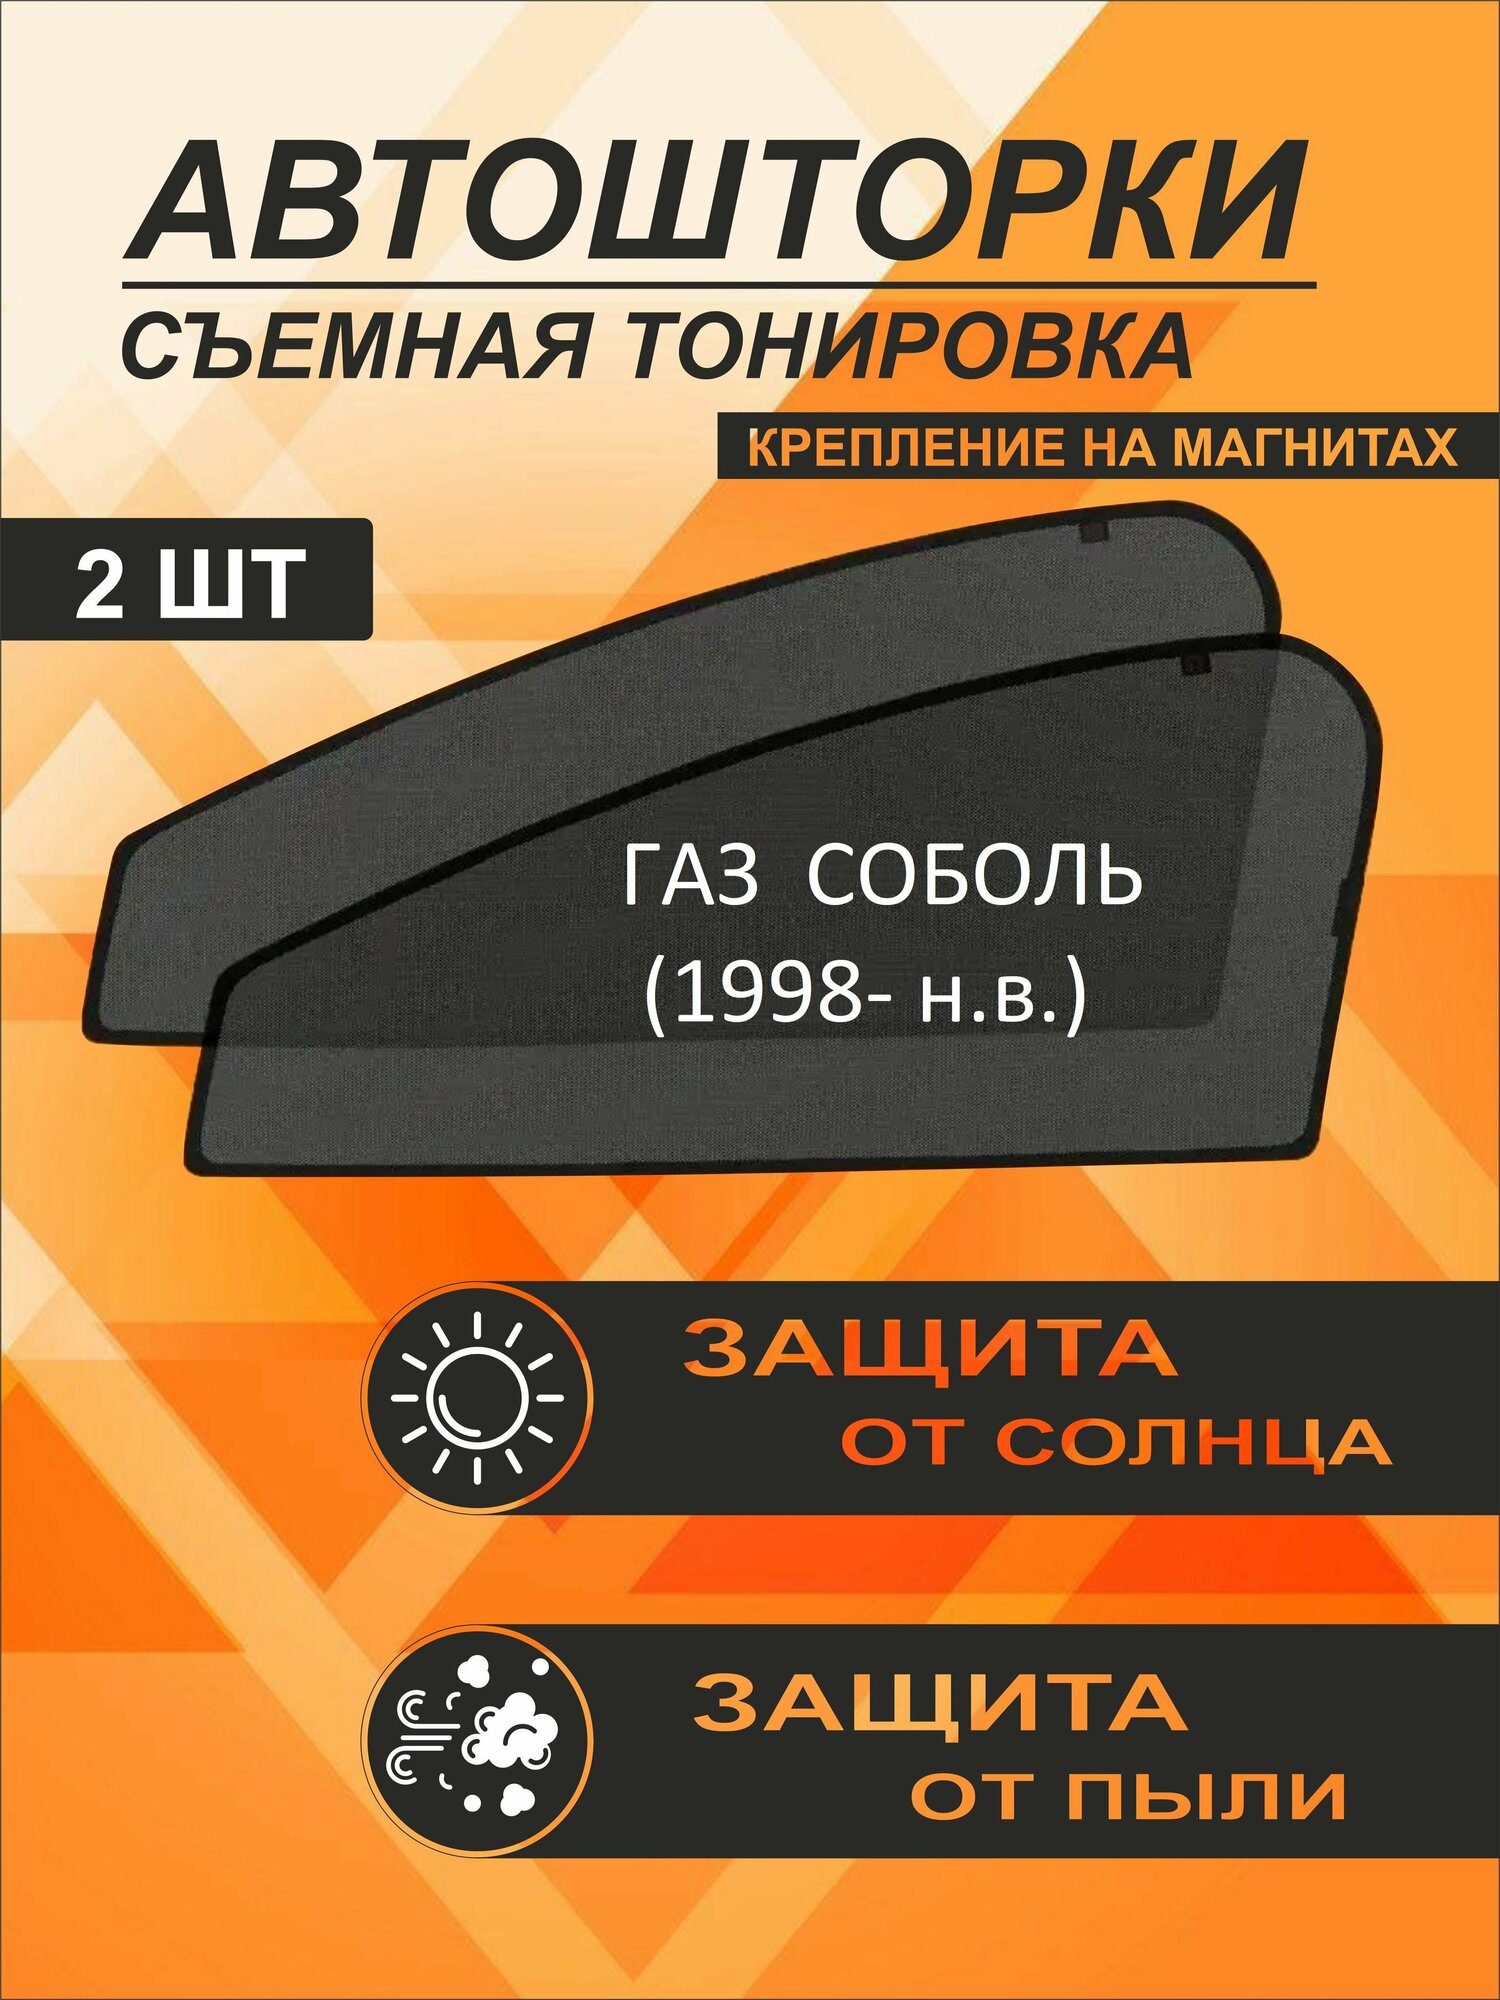 Автошторки на ГАЗ Соболь (1998-н. в)